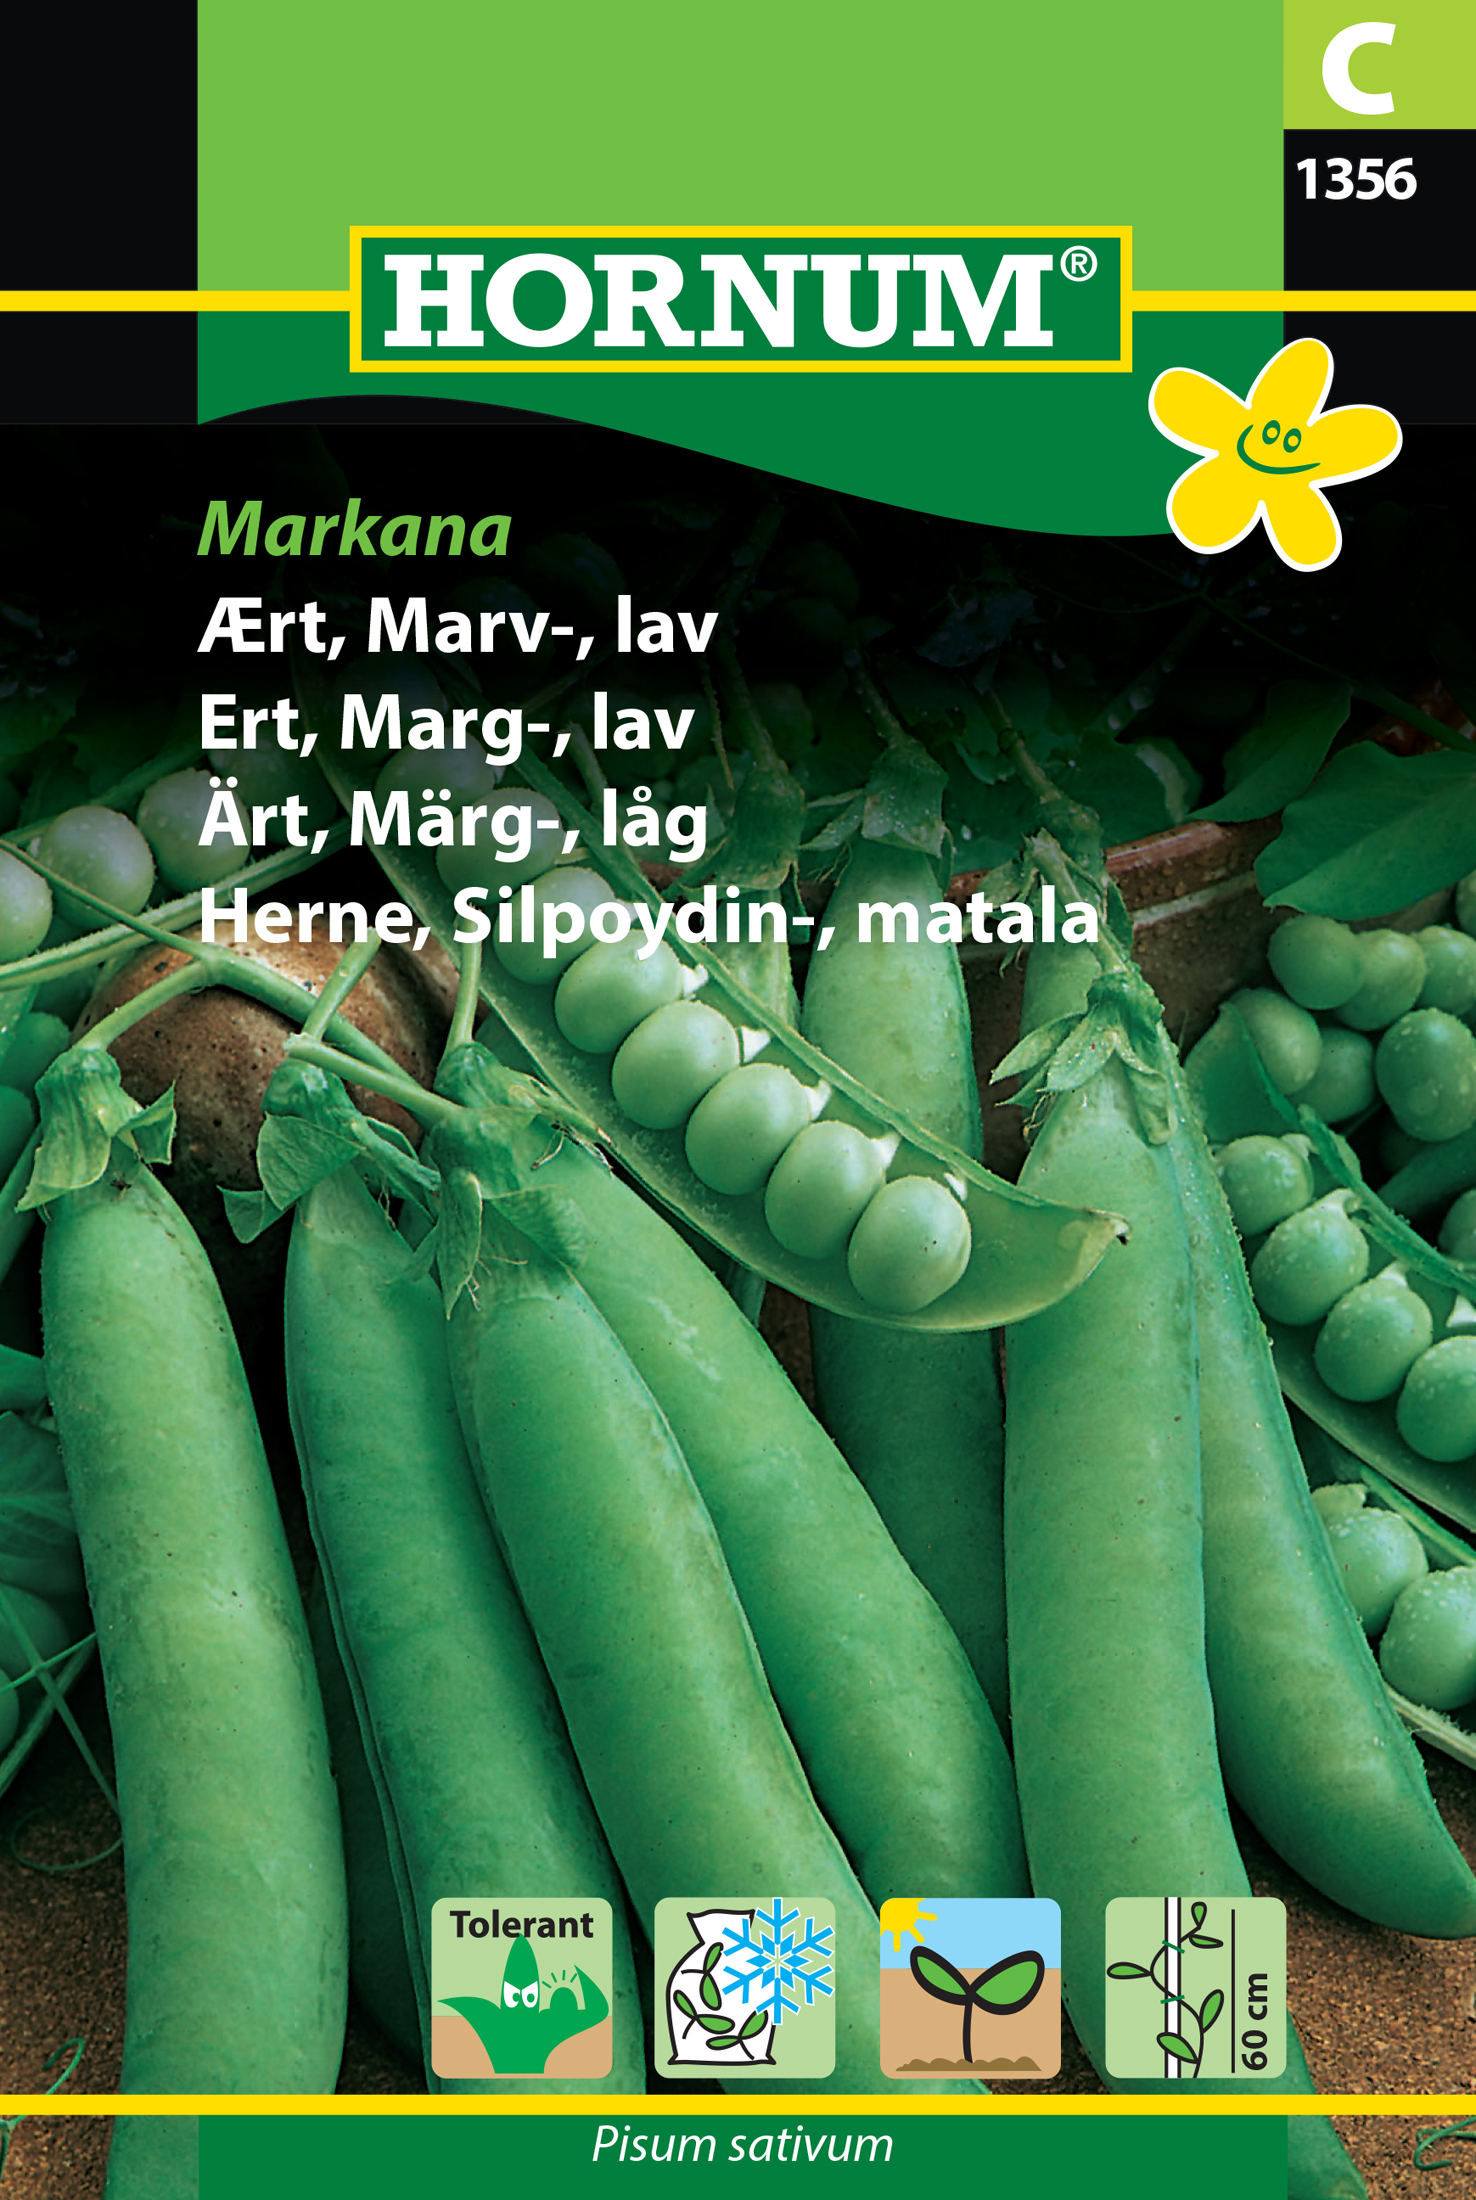 Märgärt (låg) 'Markana' frö